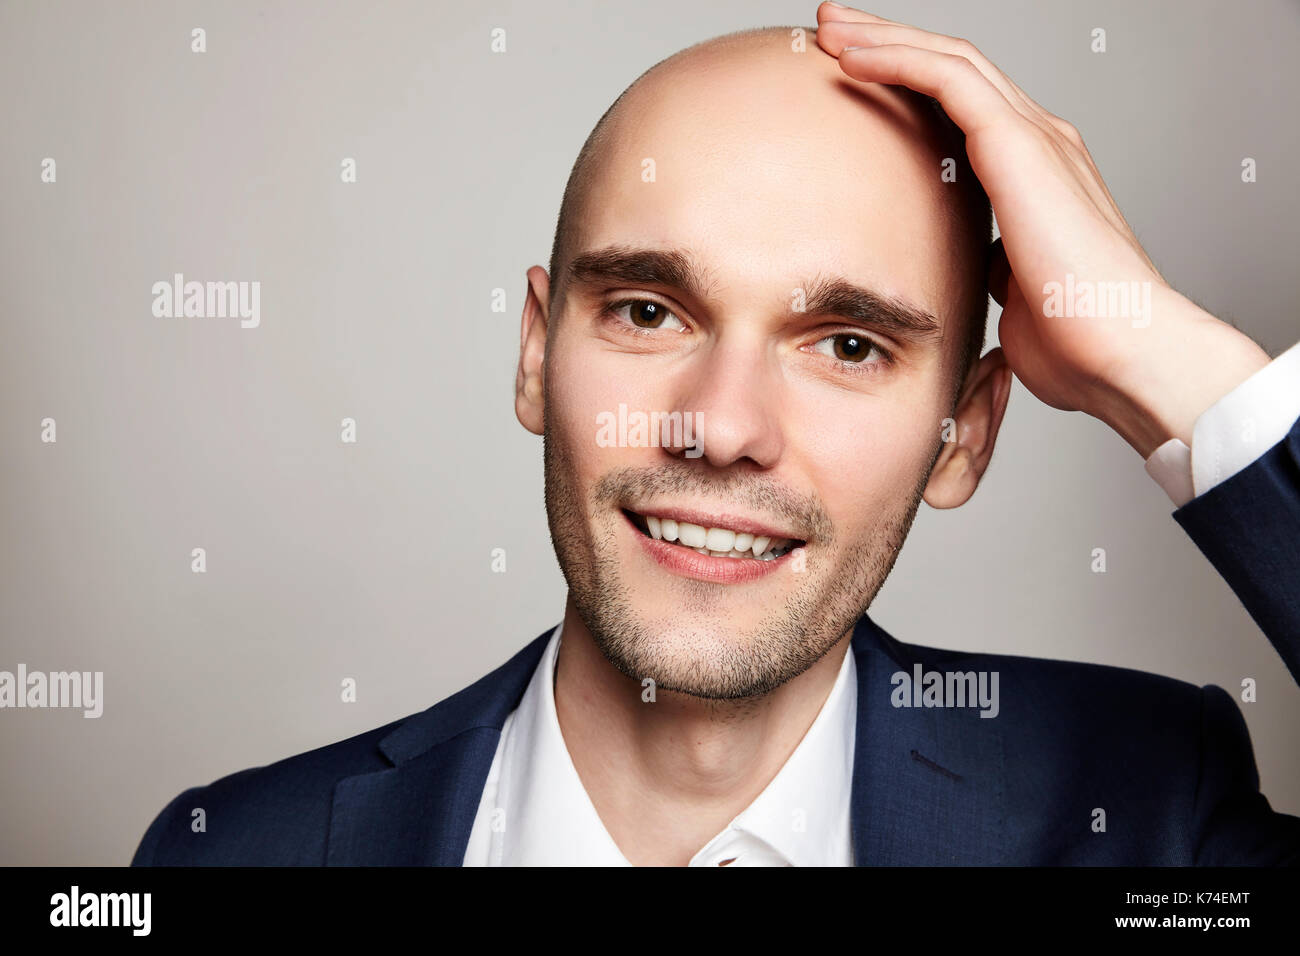 Nahaufnahme Porträt einer stattlichen glatzköpfige Mann seinen Kopf streicheln. Er lächelt. Grauer Hintergrund. Horizontale. Stockfoto